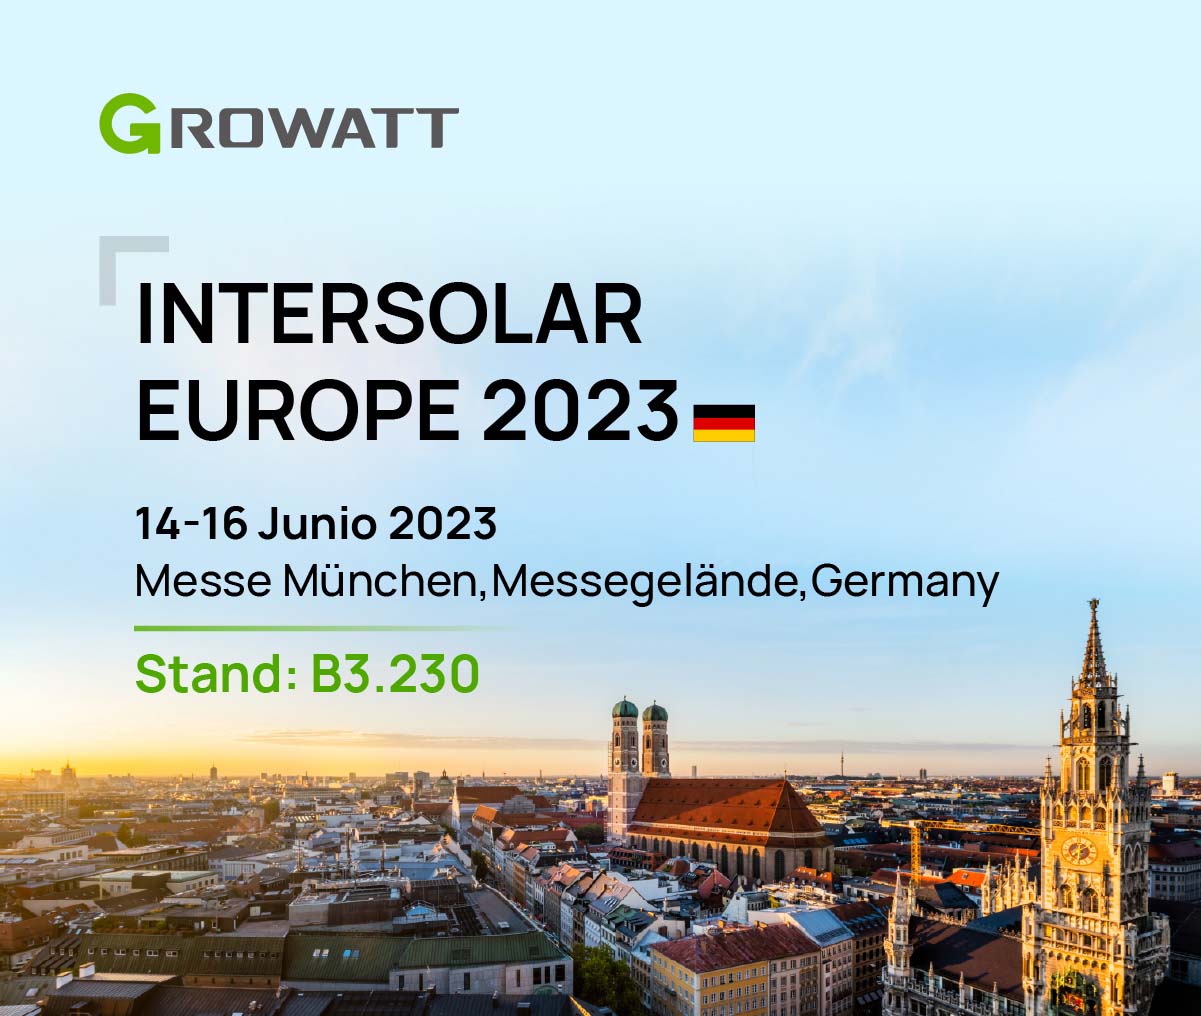 En Intersolar Europe 2023. Growatt presentará su amplio portafolio de productos